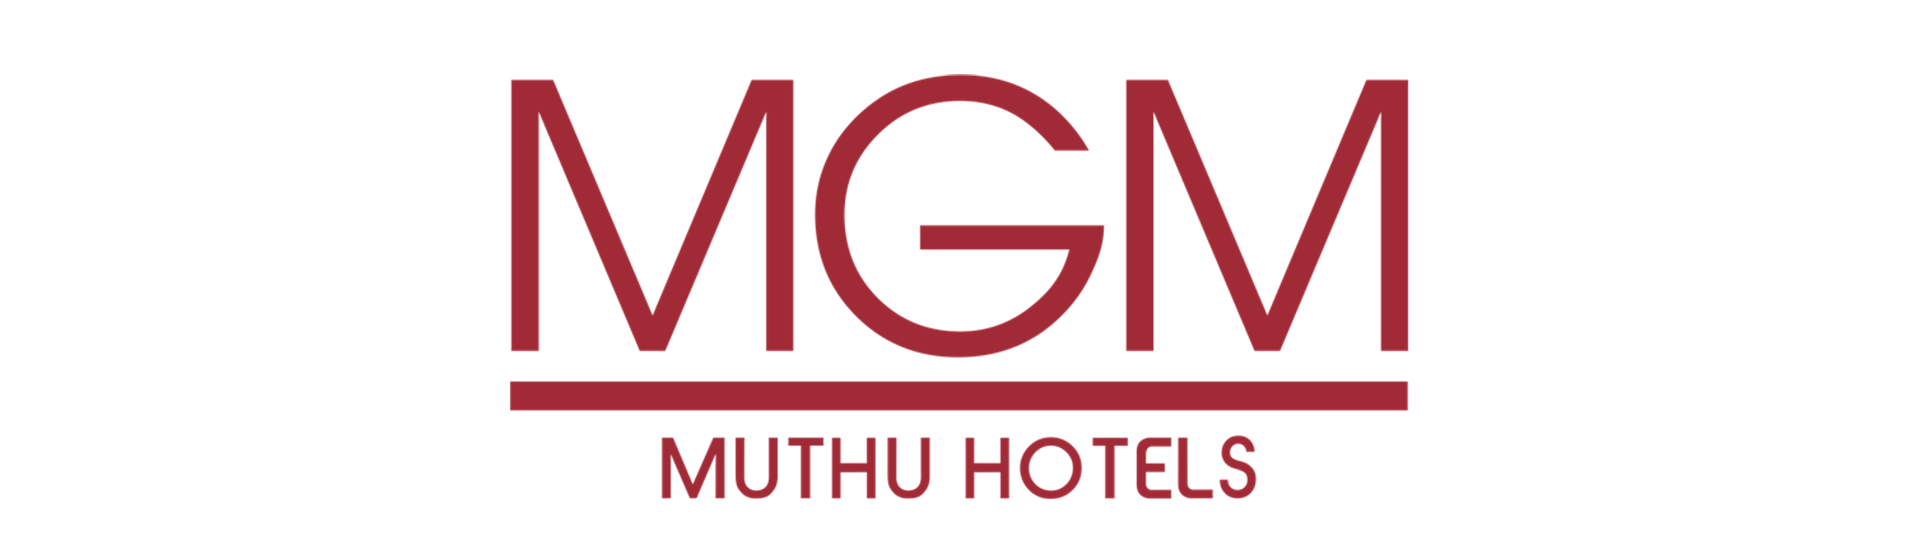 Logotipo Hoteles Muthu Cuba